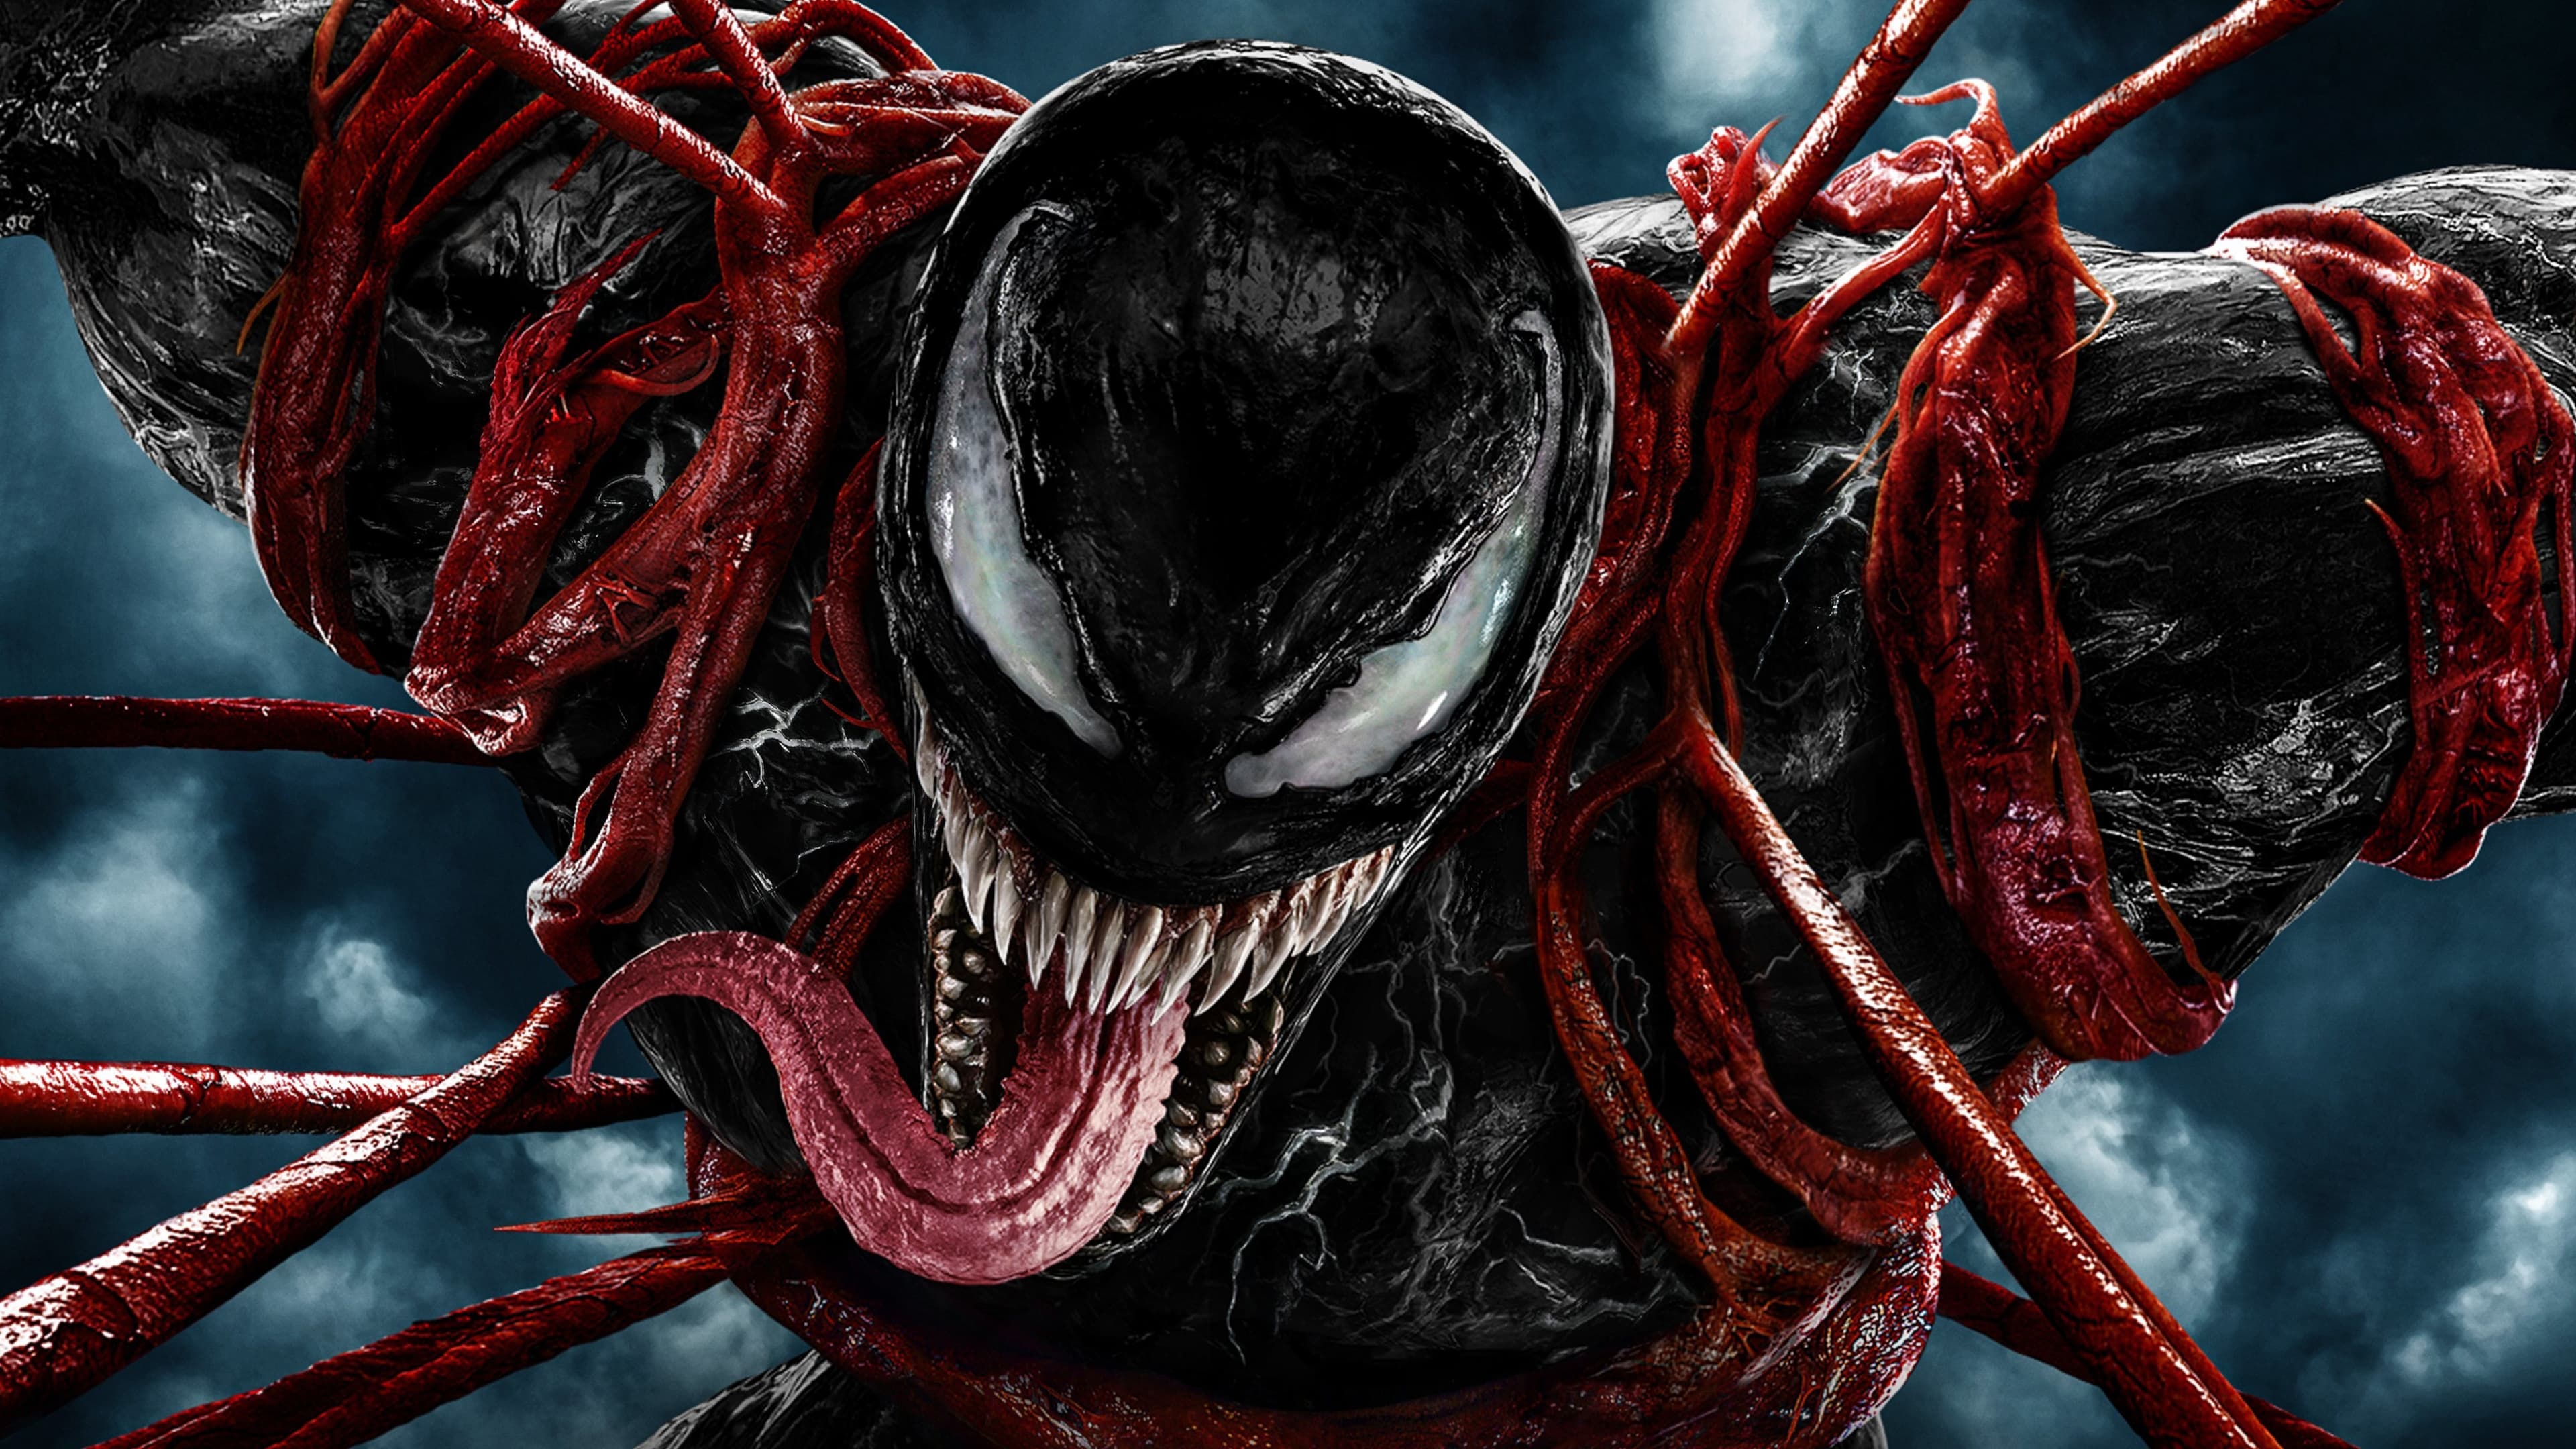 พิษ2 Venom 2 ออนไลน์โดยสมบูรณ์ในปี 2021